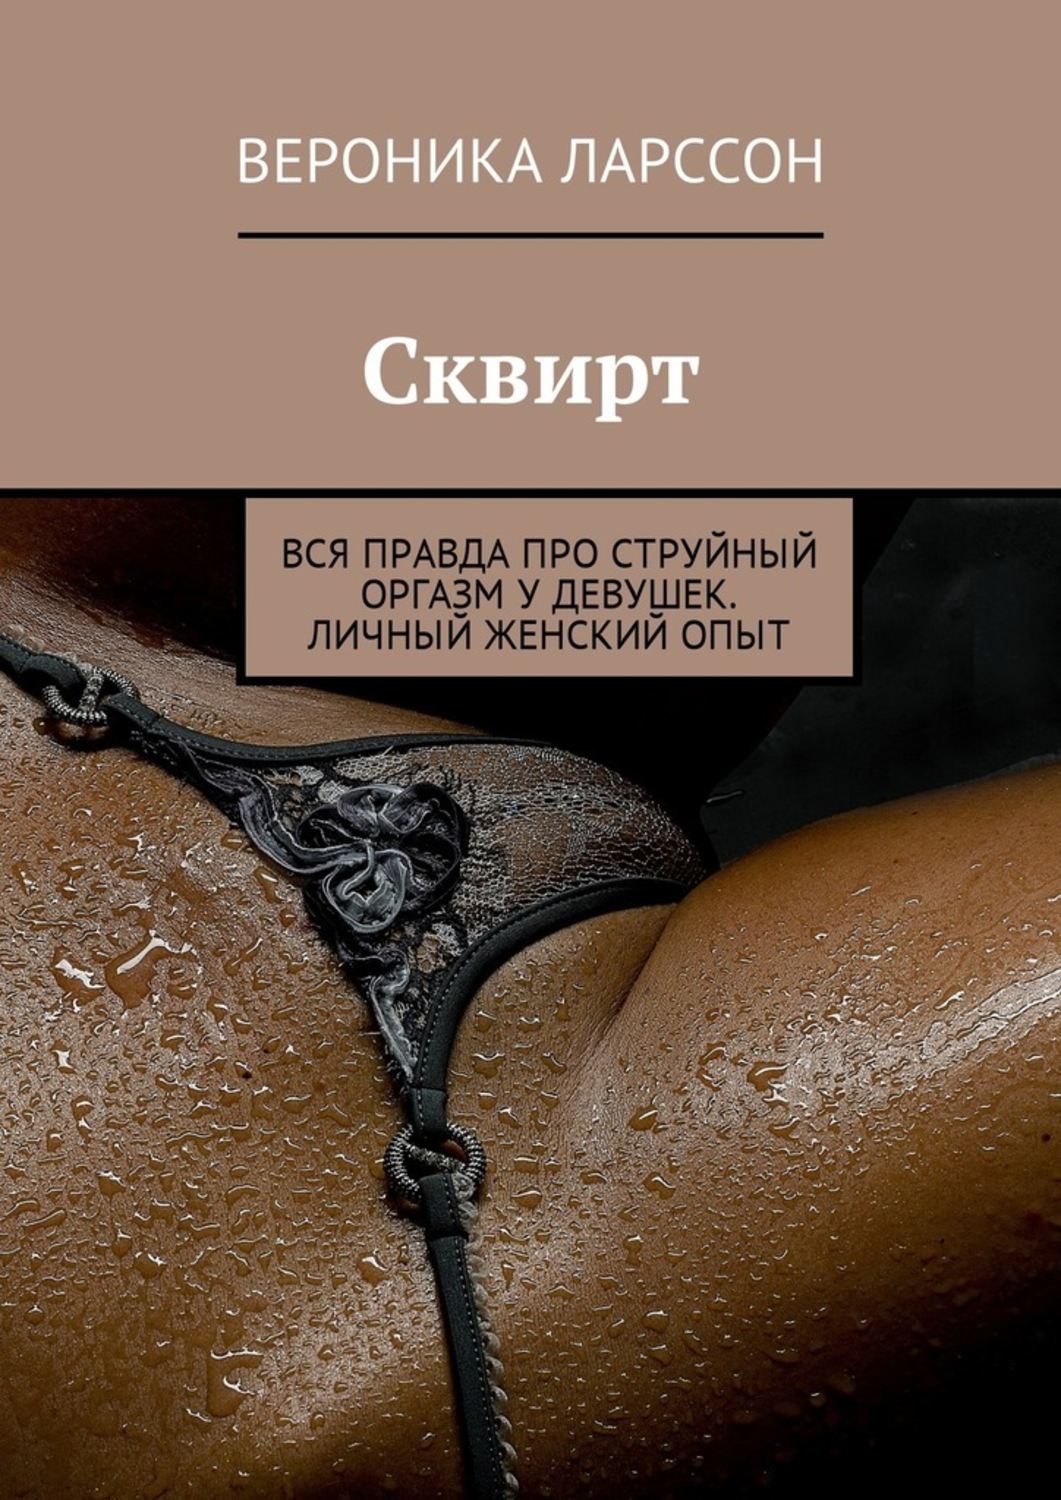 Лучшие струйные оргазмы: обширная коллекция русского порно на lavandasport.ru